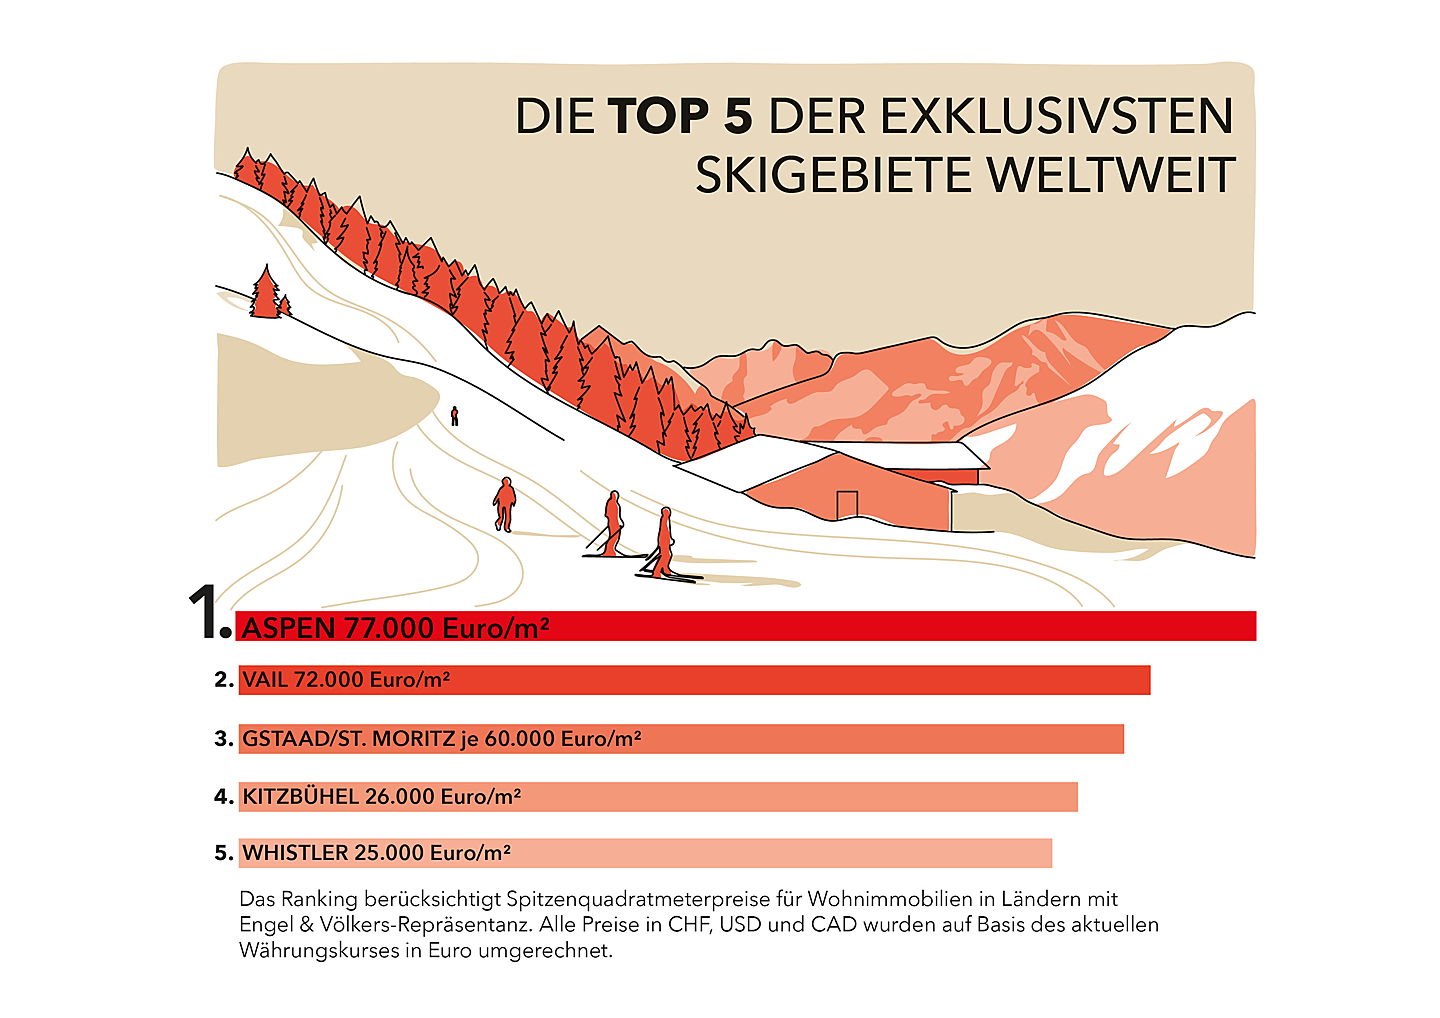  Flims Waldhaus
- Engel & Völkers Ski-Ranking 2022/23: Die Top 5 der exklusivsten Skigebiete weltweit.
(Bildquelle: Engel & Völkers)